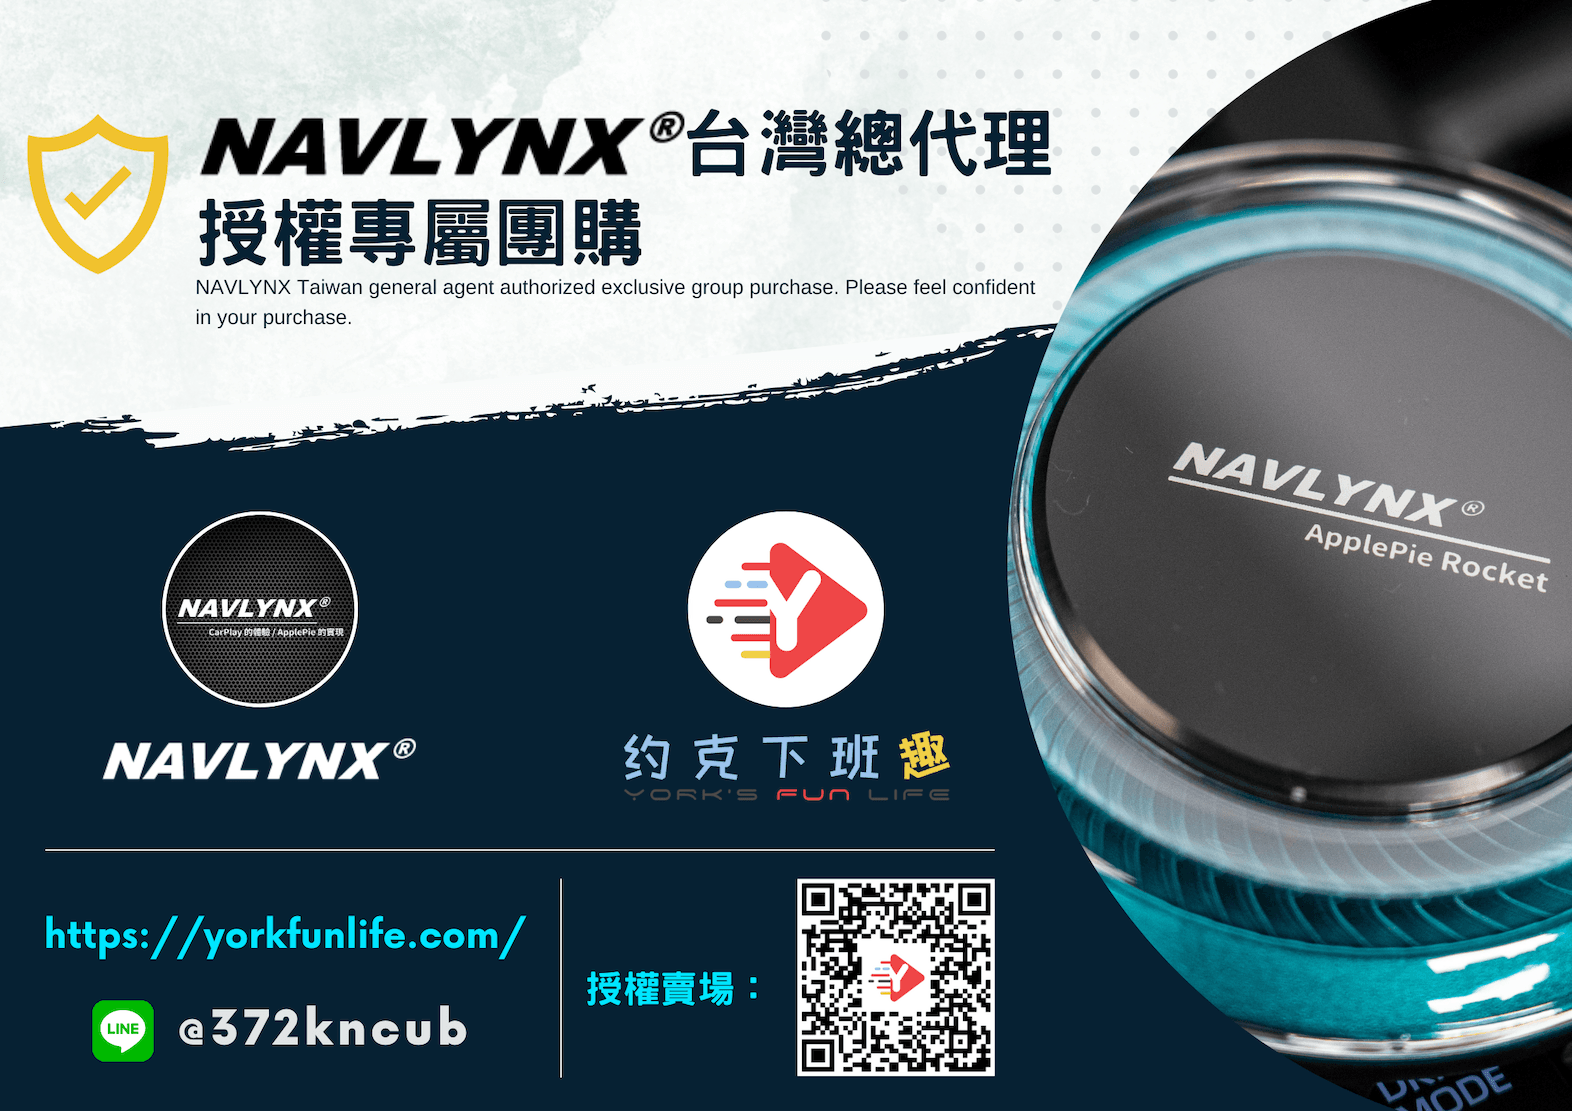 NAVLYNX 台灣總代理授權